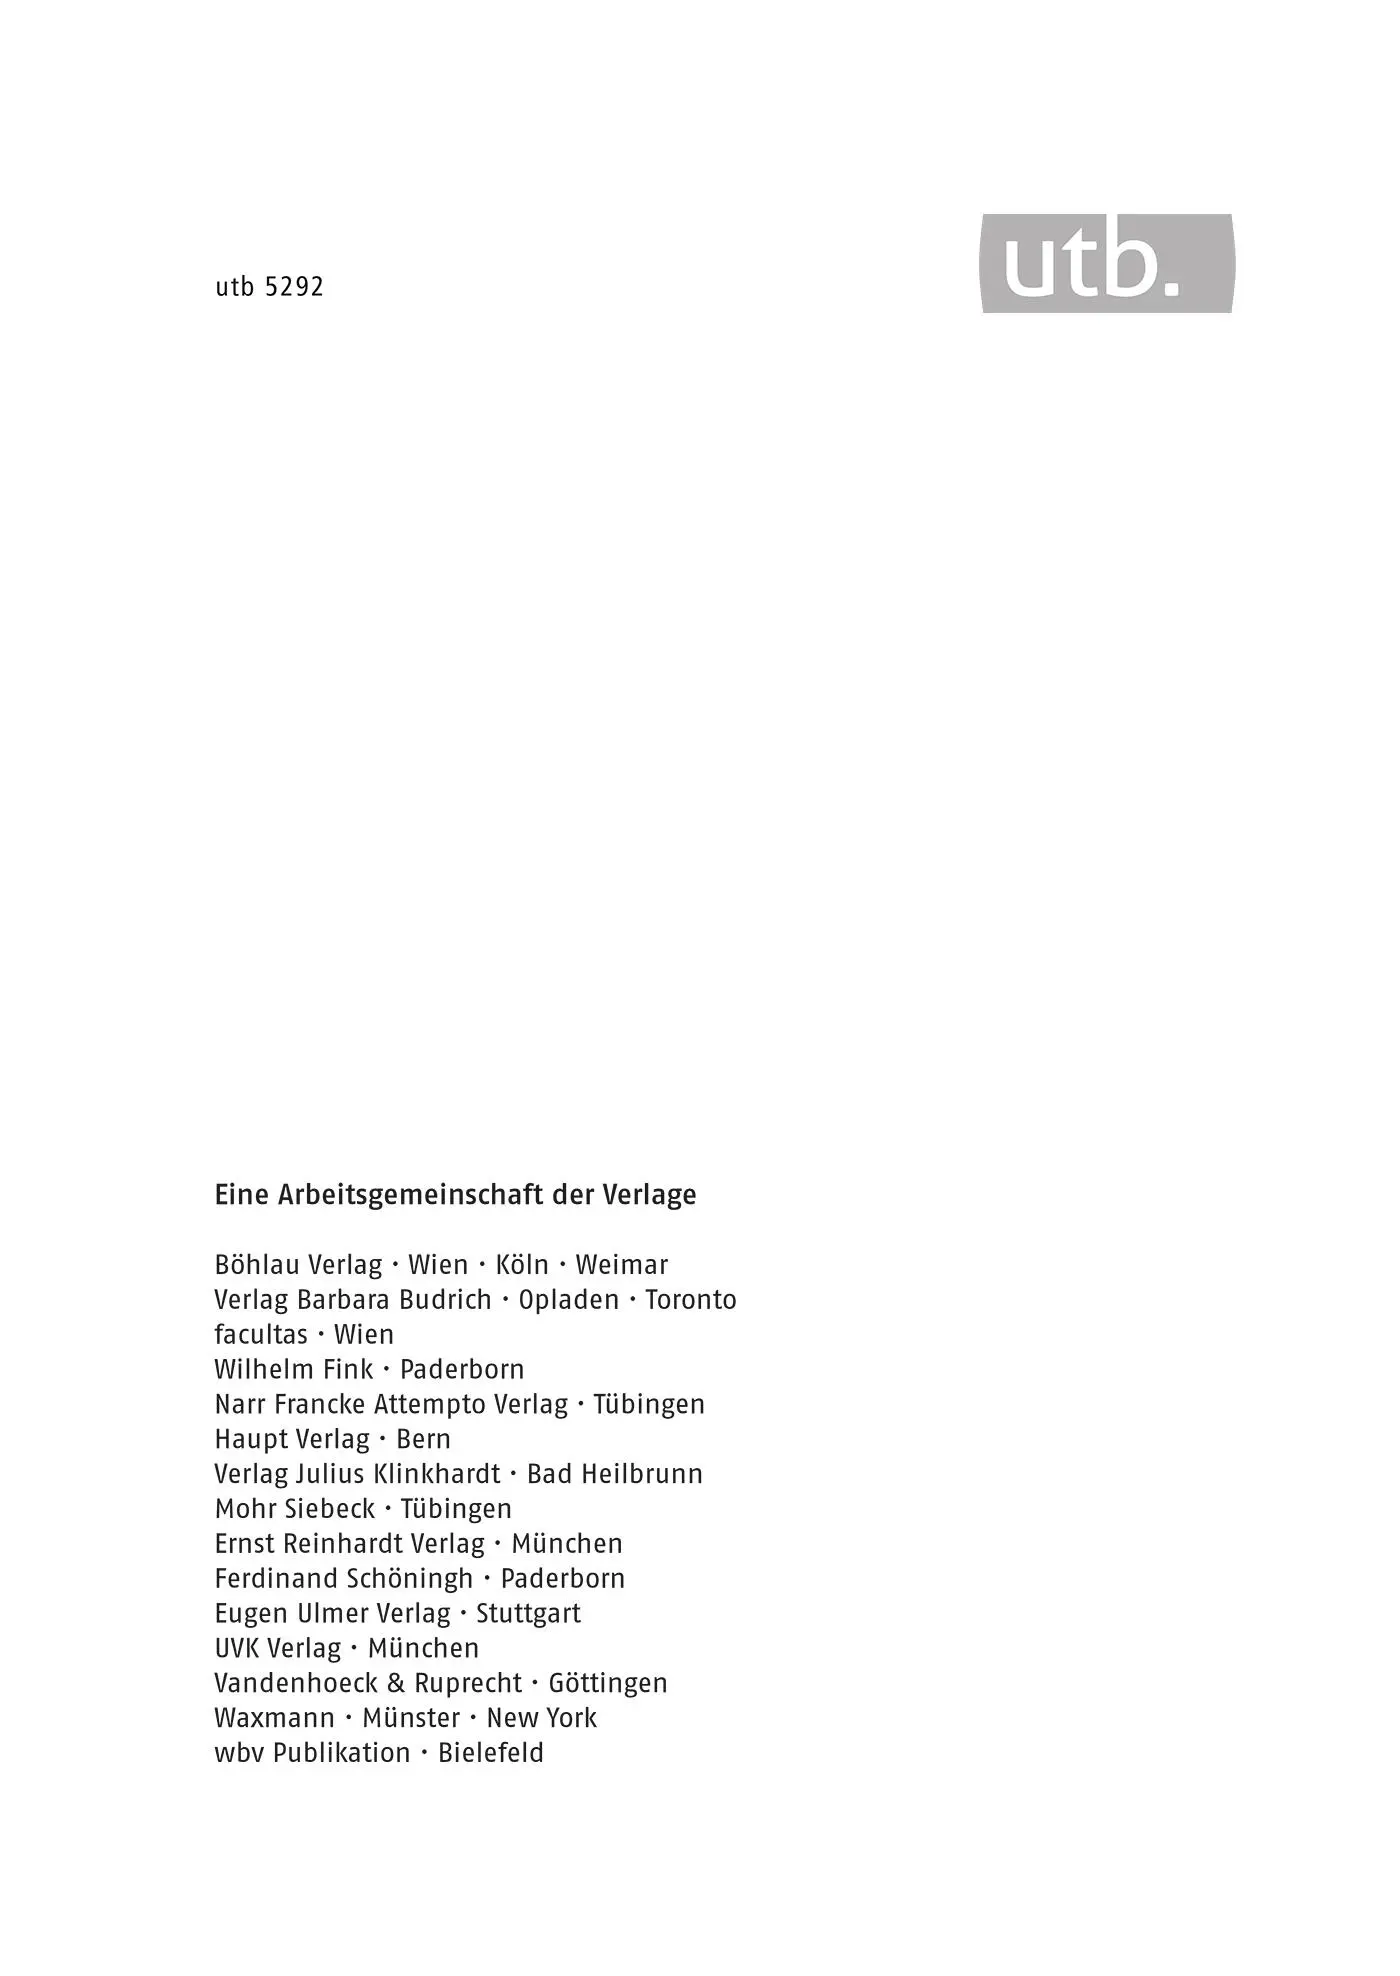 Die UNO Aufgaben und Arbeitsweisen UVK Verlag München UVK Verlag München 2018 - фото 1